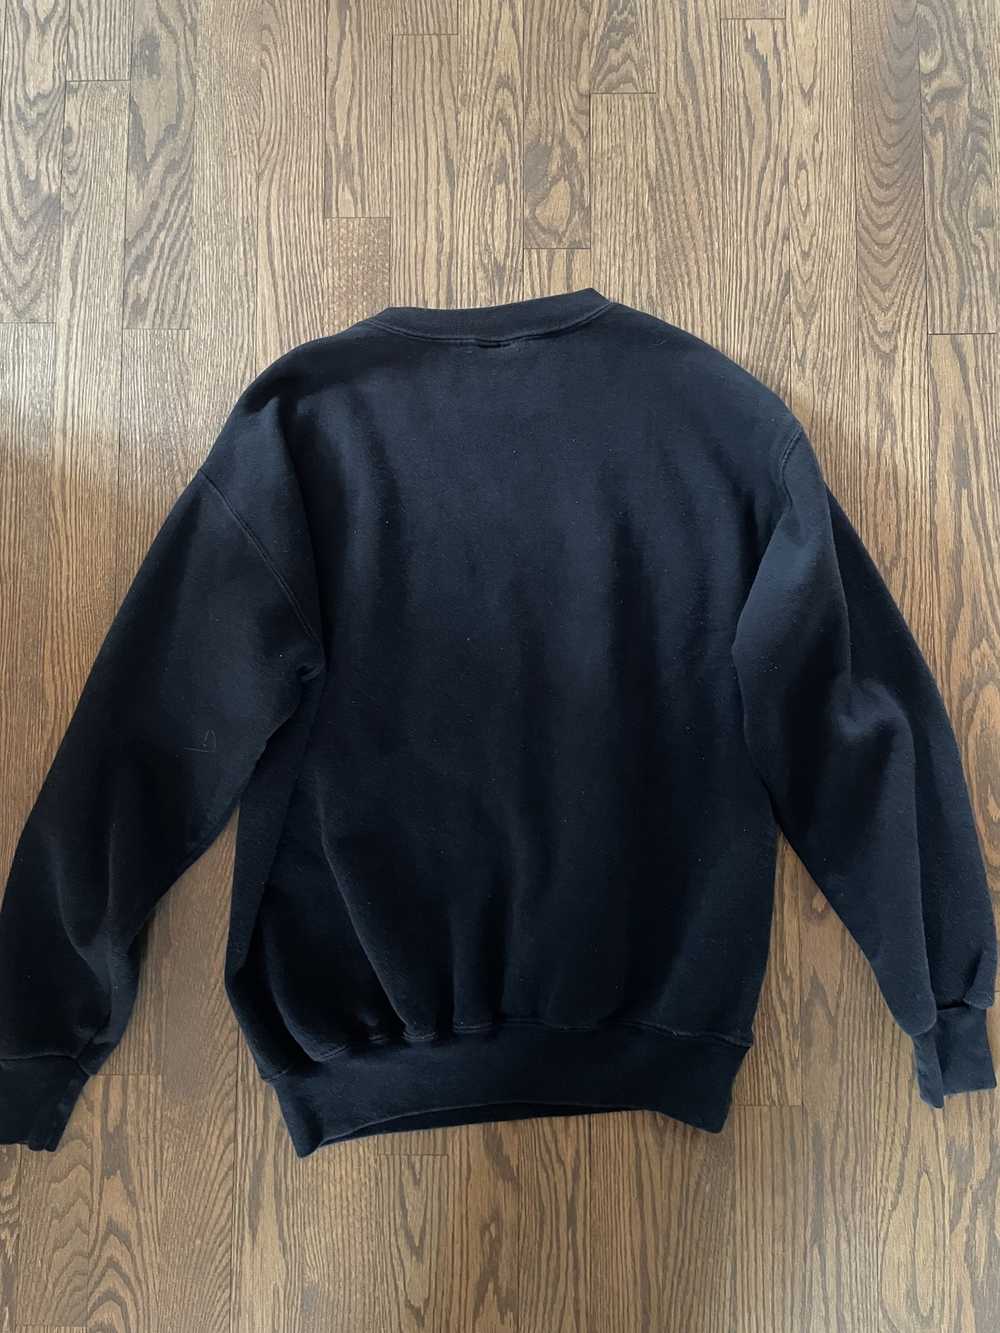 Nutmeg Chicago Blackhawks vintage sweater - image 2